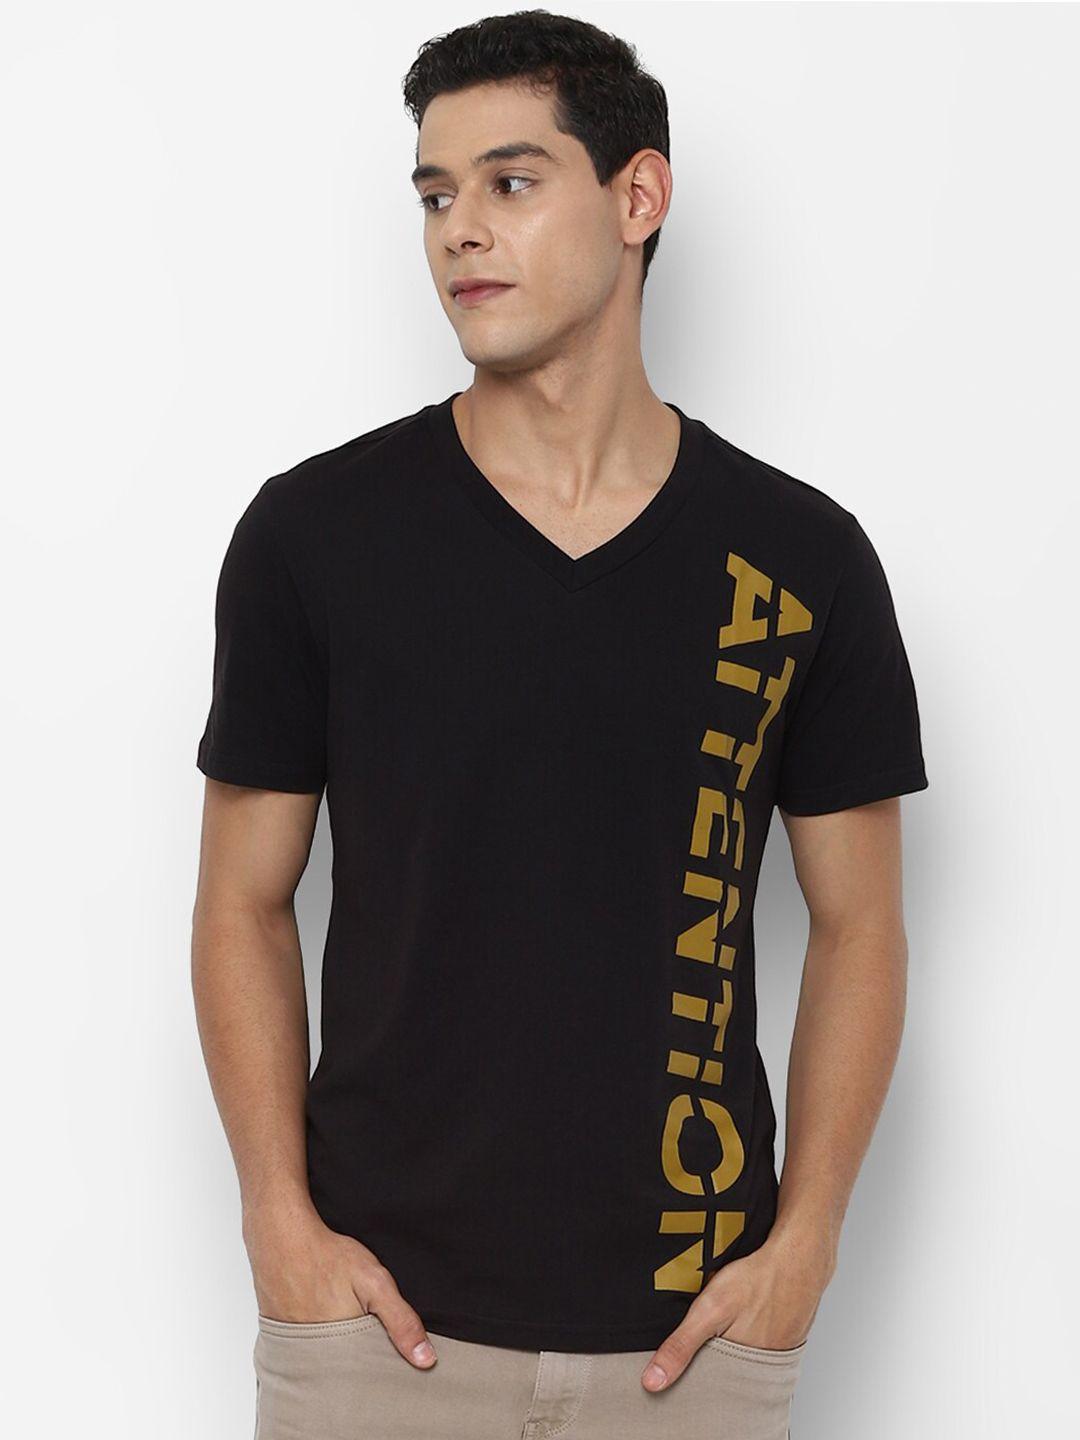 forever-21-men-black-typography-printed-v-neck-raw-edge-t-shirt